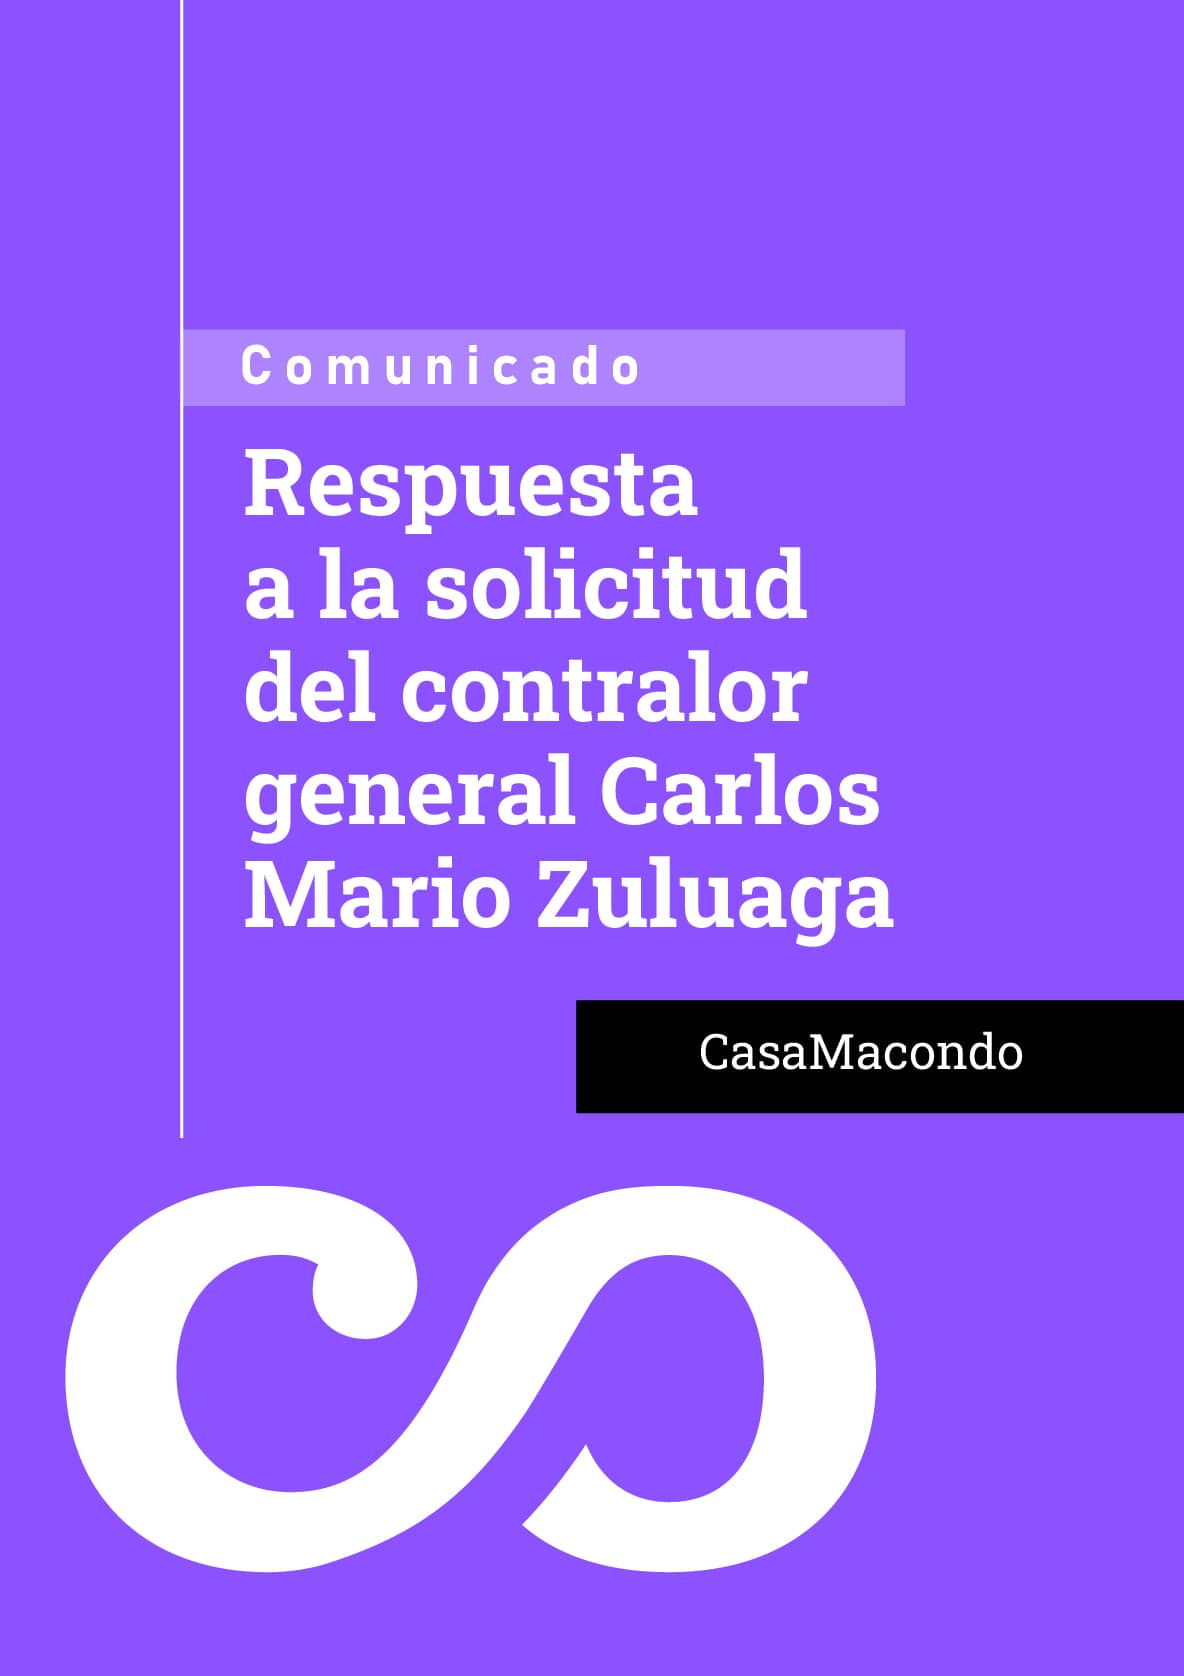 Respuesta a la solicitud del contralor general Carlos Mario Zuluaga